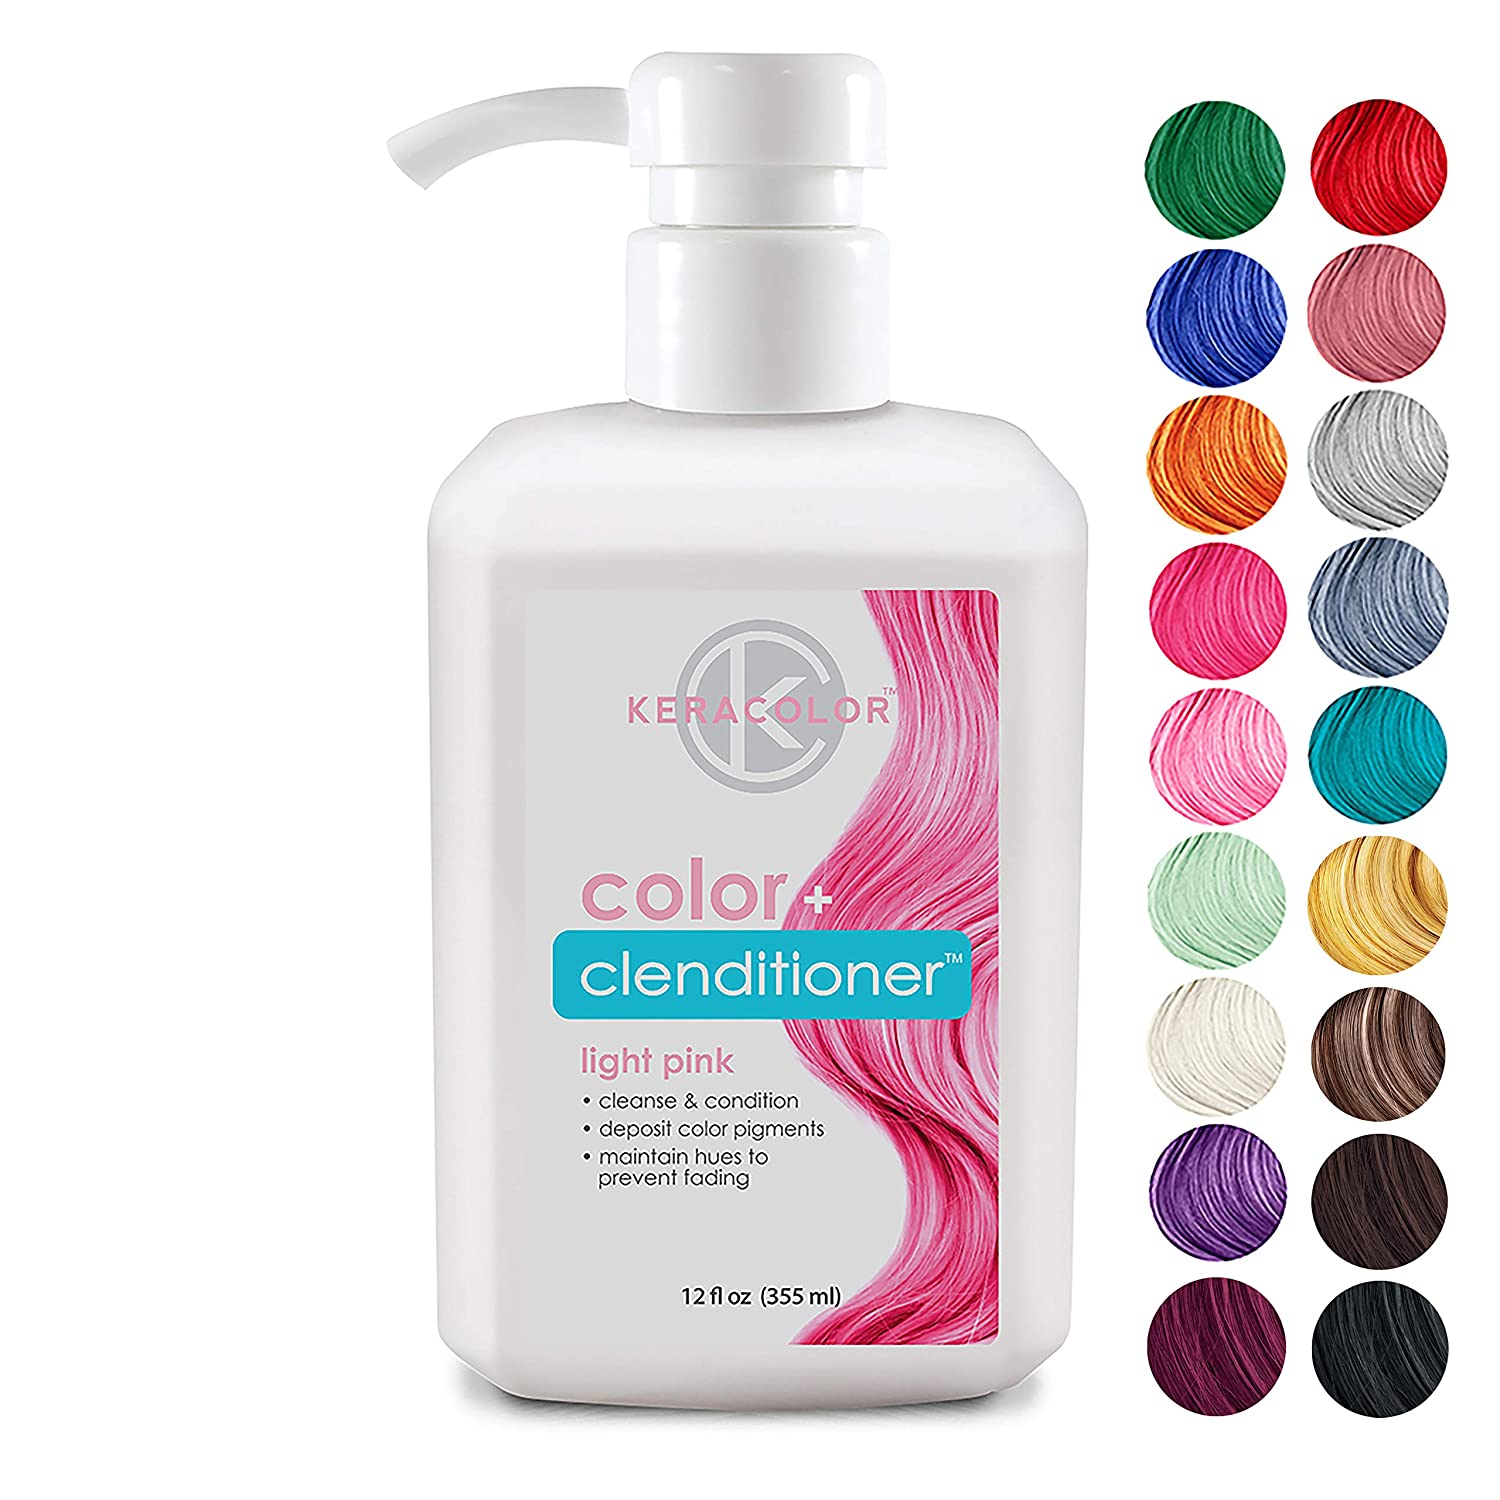 Keracolor + Keracolor Clenditioner Color Depositing Conditioner Colorwash.